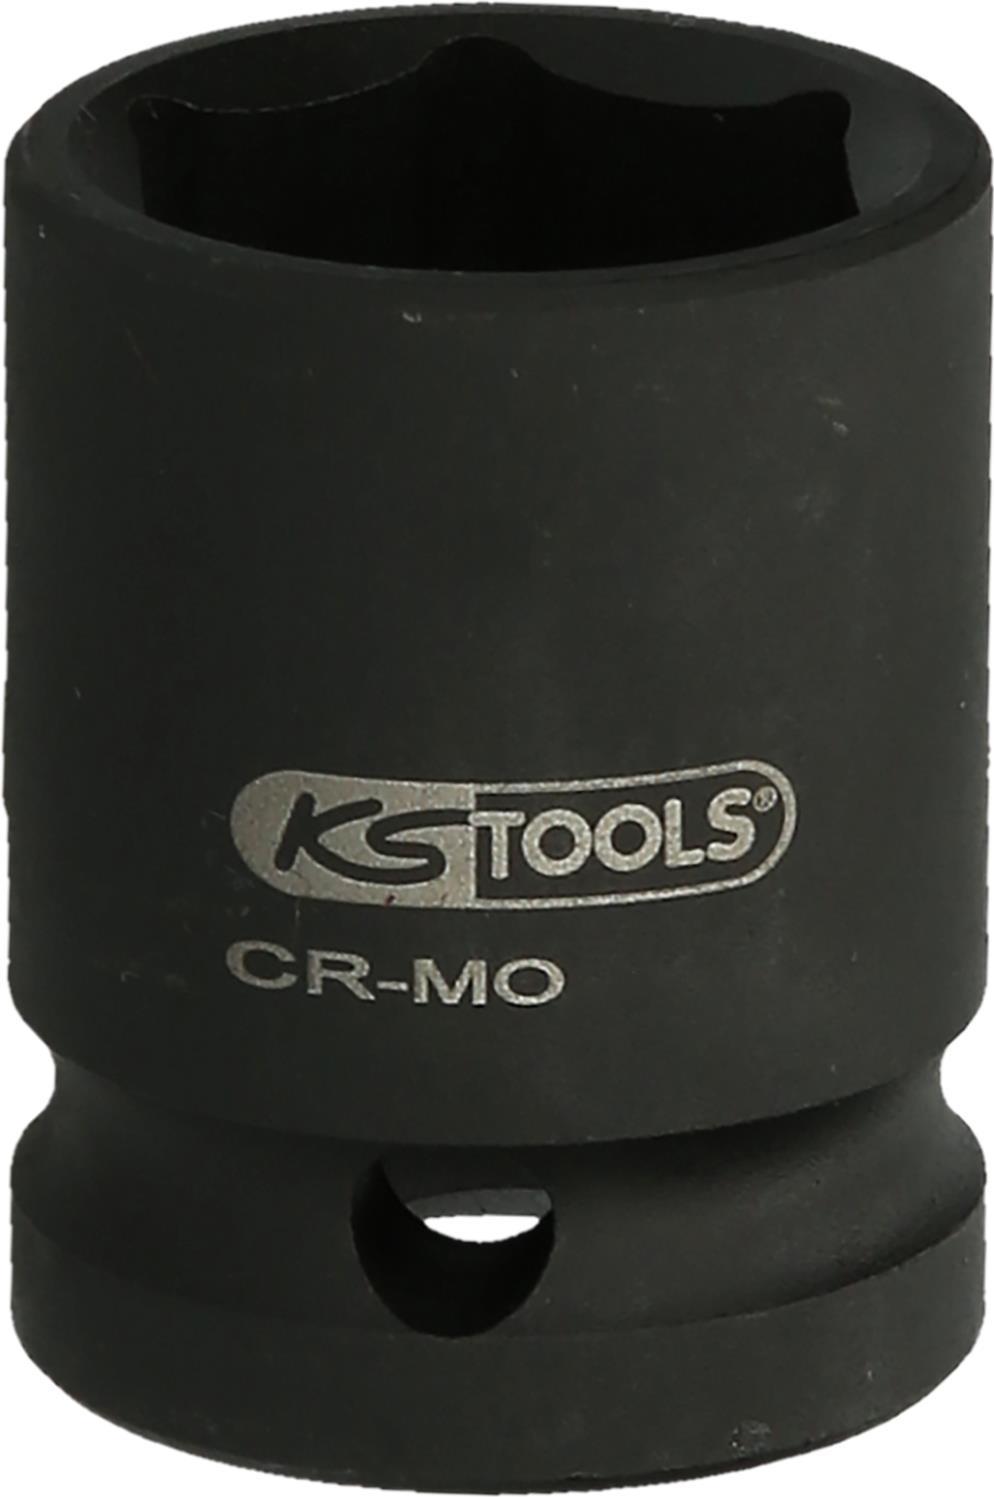 KS TOOLS Werkzeuge-Maschinen GmbH 1.1/2\" Sechskant-Kraft-Stecknuss, 100 mm, kurz (515.2155)